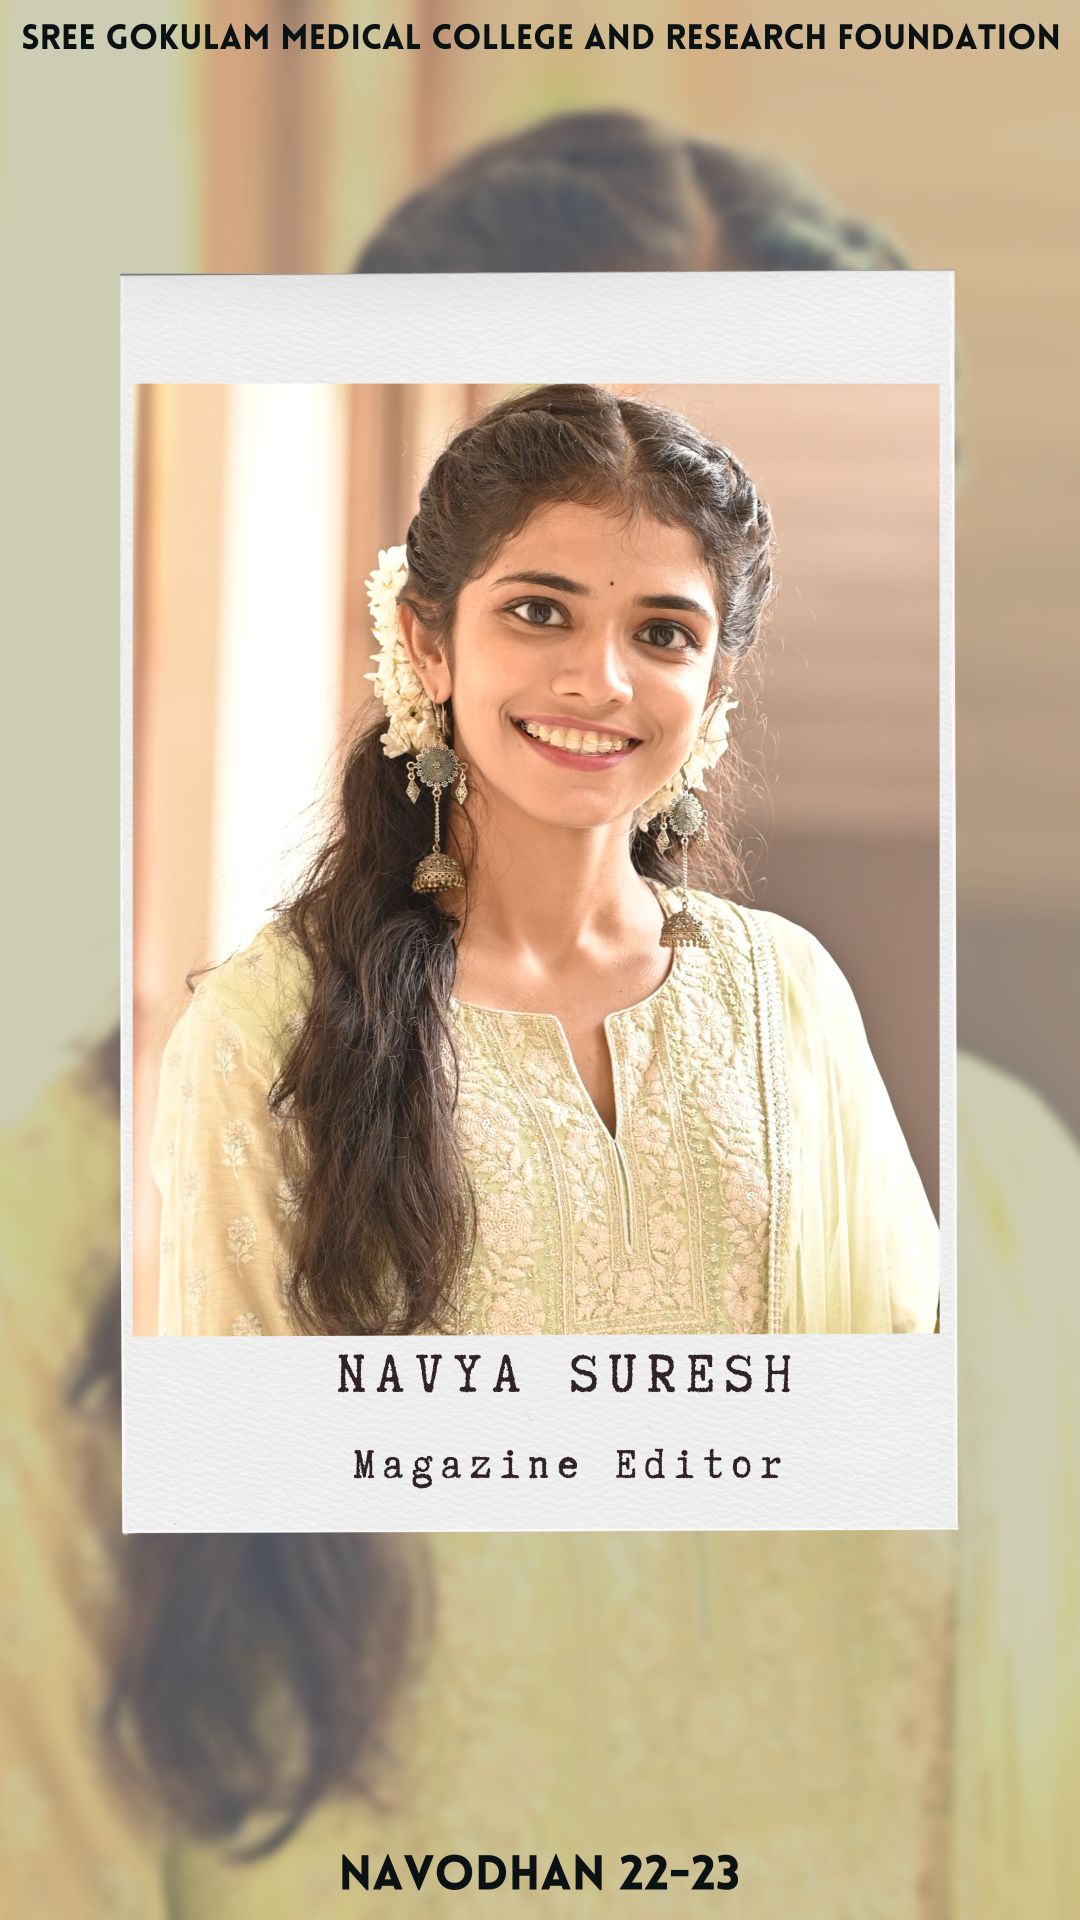 Navya Suresh